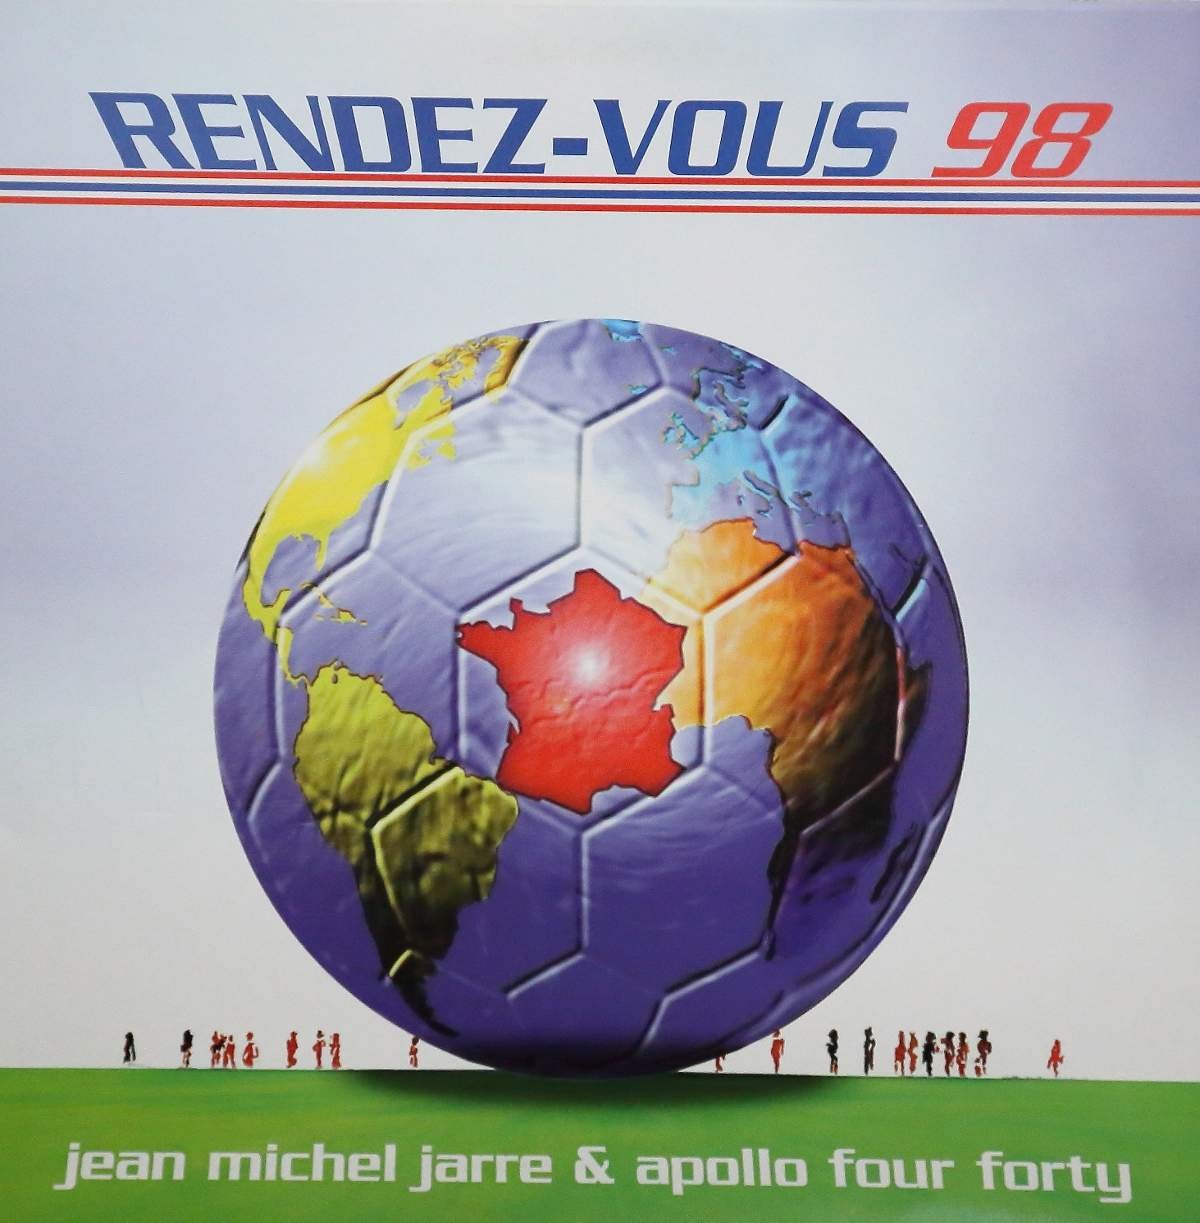 Jean Michel Jarre - Rendez Vous 98 (Apollo 440 Remix) Promo